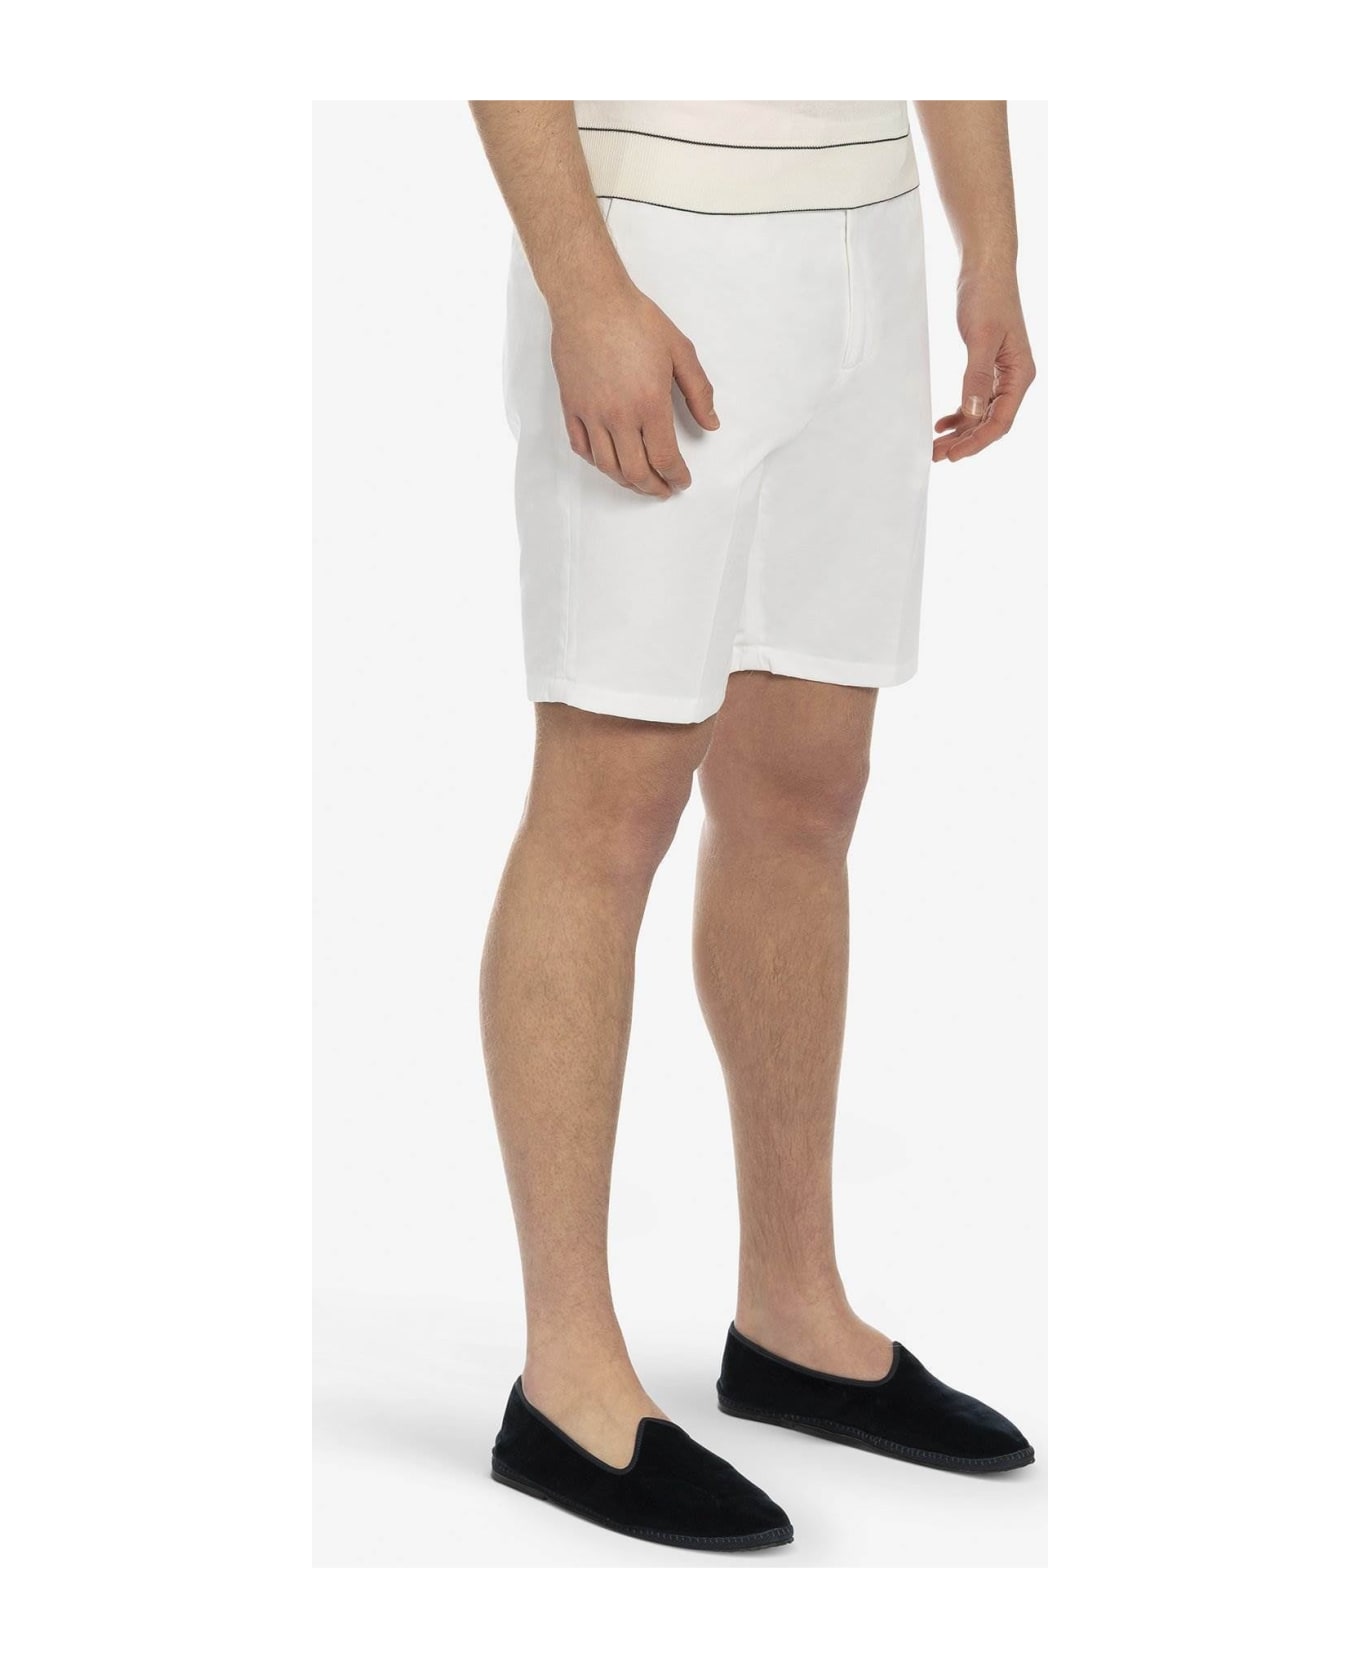 Larusmiani Bermuda Short 'poltu Quatu' Shorts - White ショートパンツ